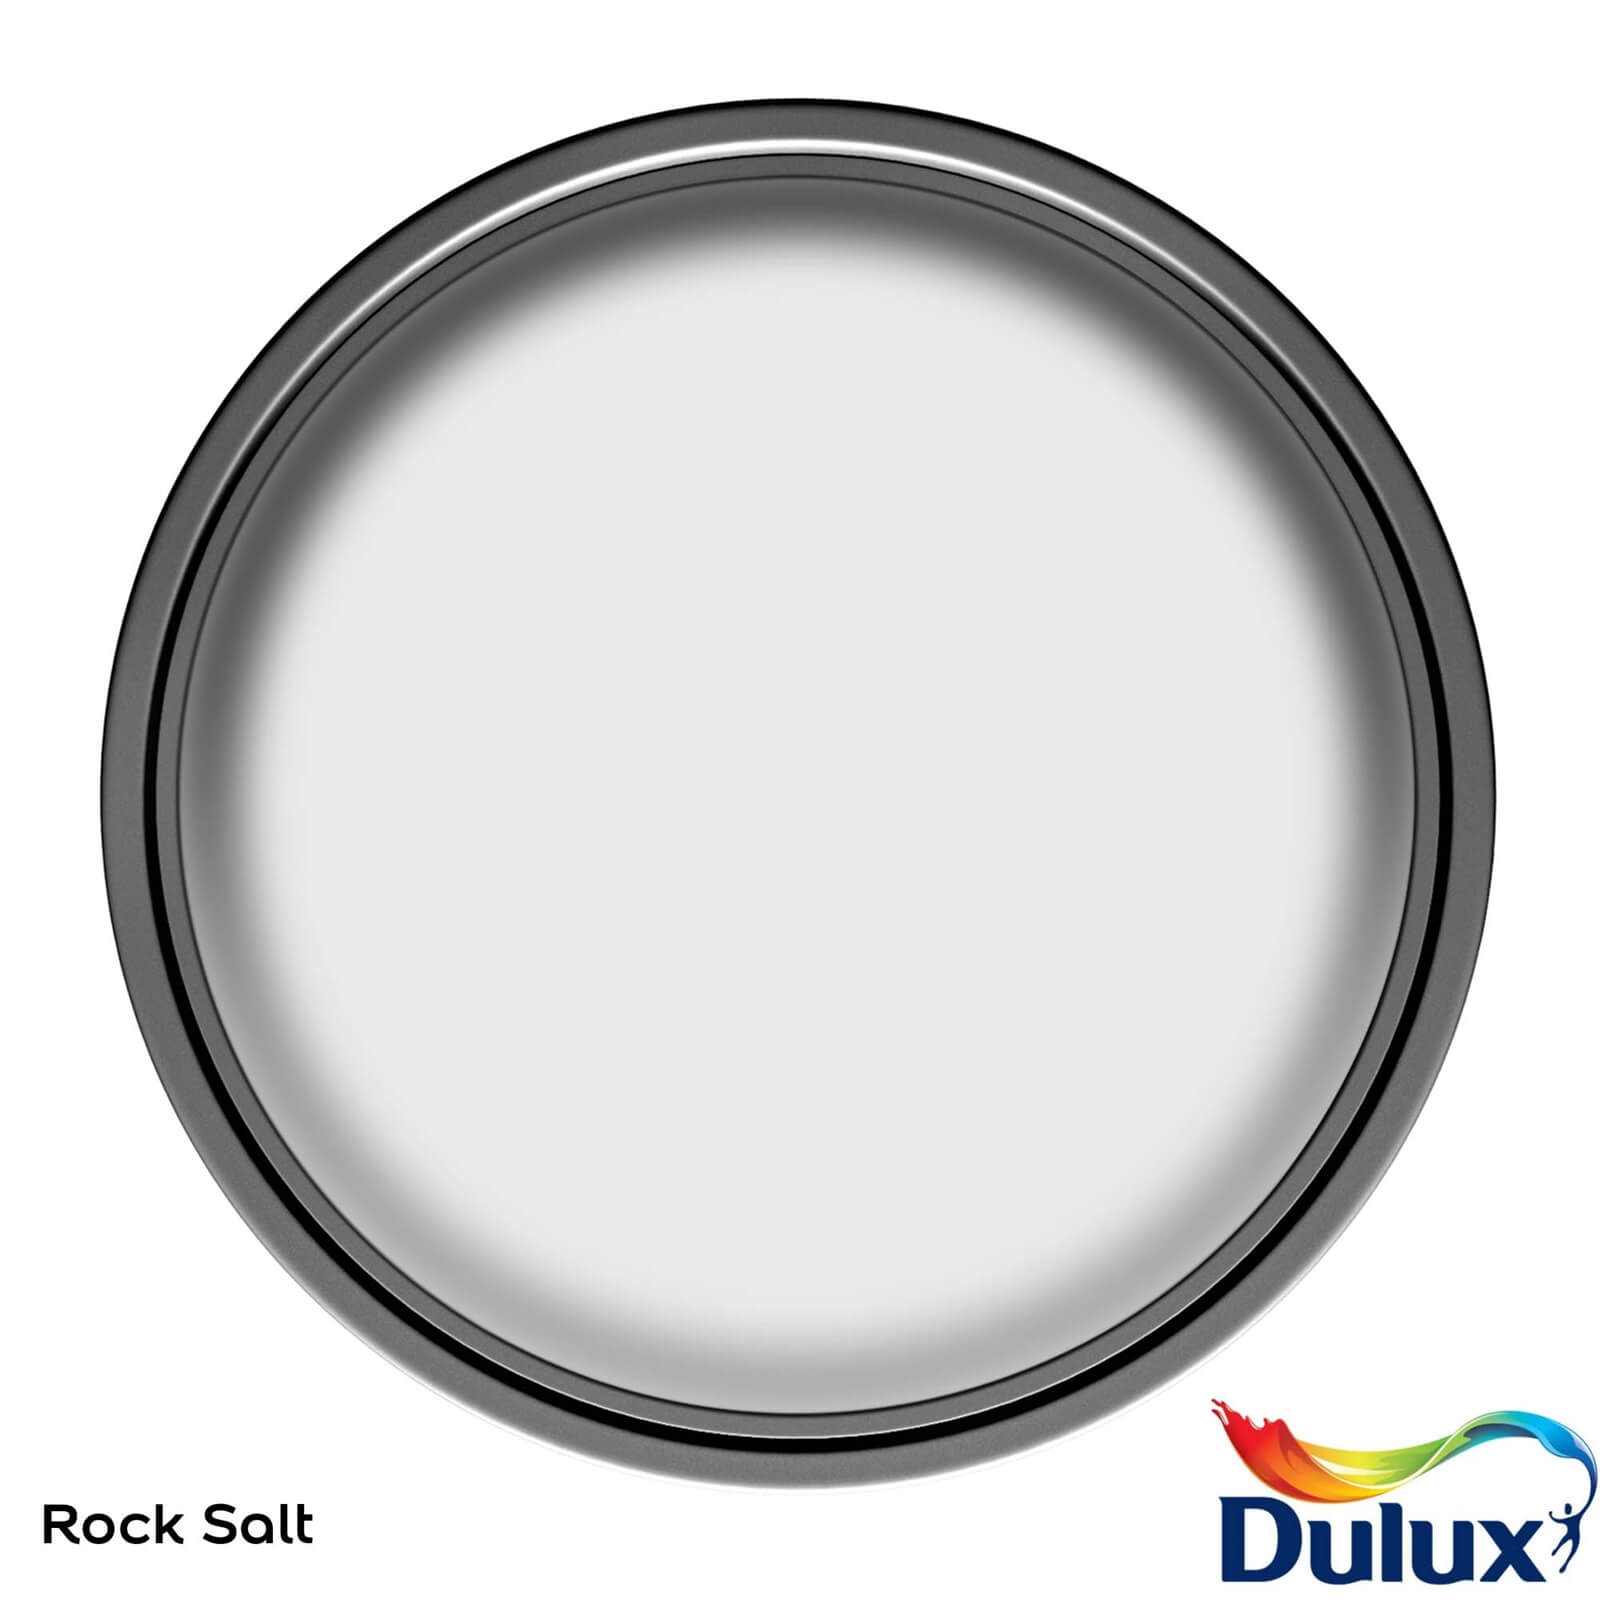 Dulux Easycare Washable & Tough Matt Paint Rock Salt - 2.5L